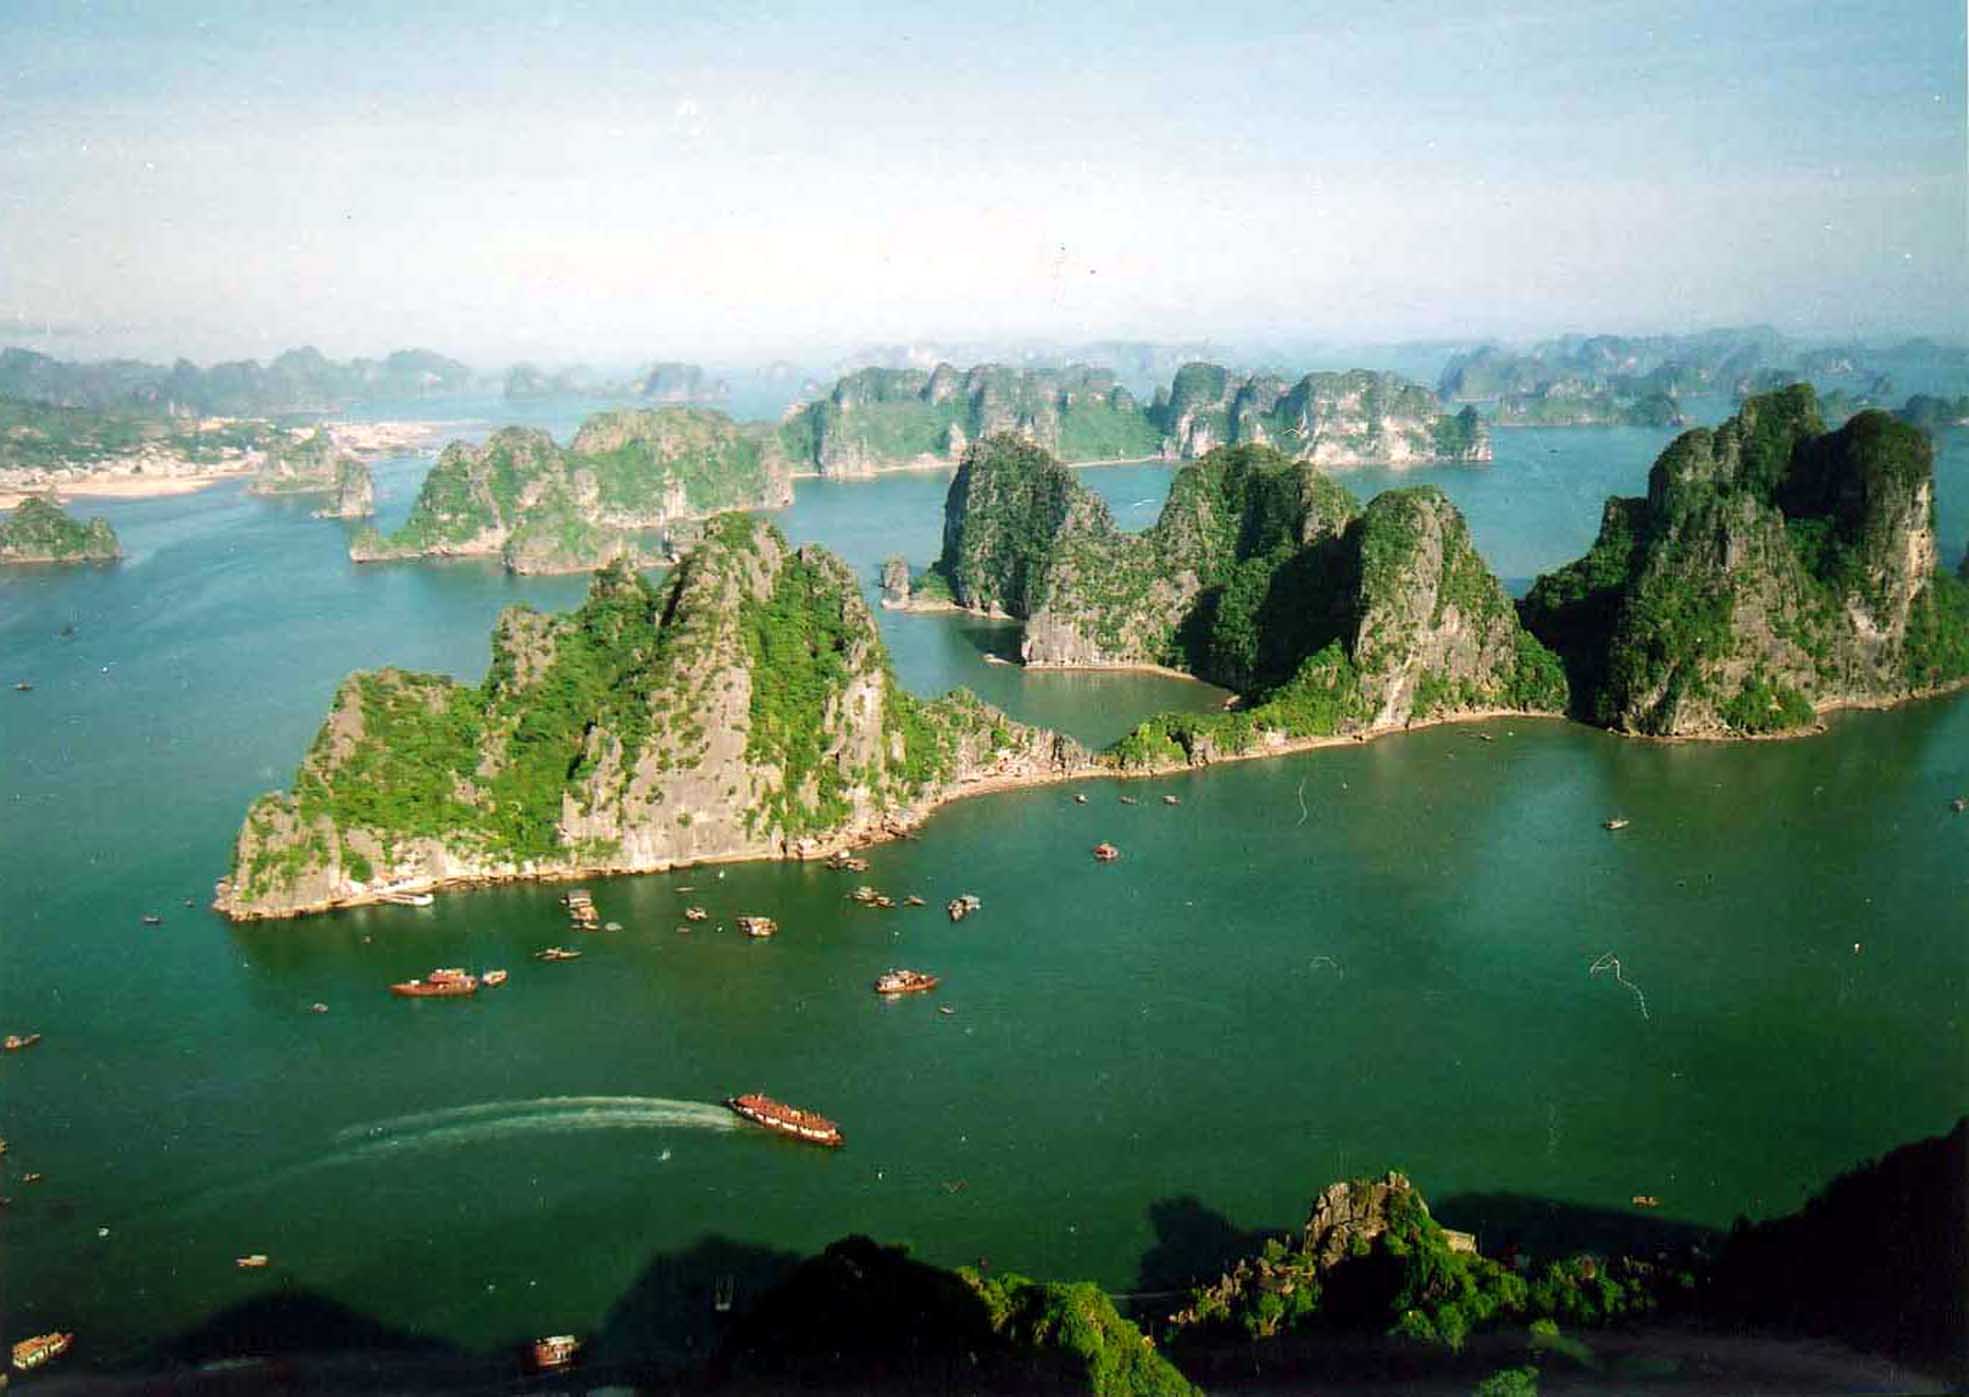 Du lịch Quảng Ninh đang trở thành một lựa chọn tuyệt vời cho những ai muốn khám phá vẻ đẹp của miền Bắc Việt Nam. Với những địa danh nổi tiếng như Vịnh Hạ Long, Yên Tử hay Cửa Vạn, bạn sẽ được tận hưởng những trải nghiệm tuyệt vời và những phút giây thư giãn tuyệt đối.